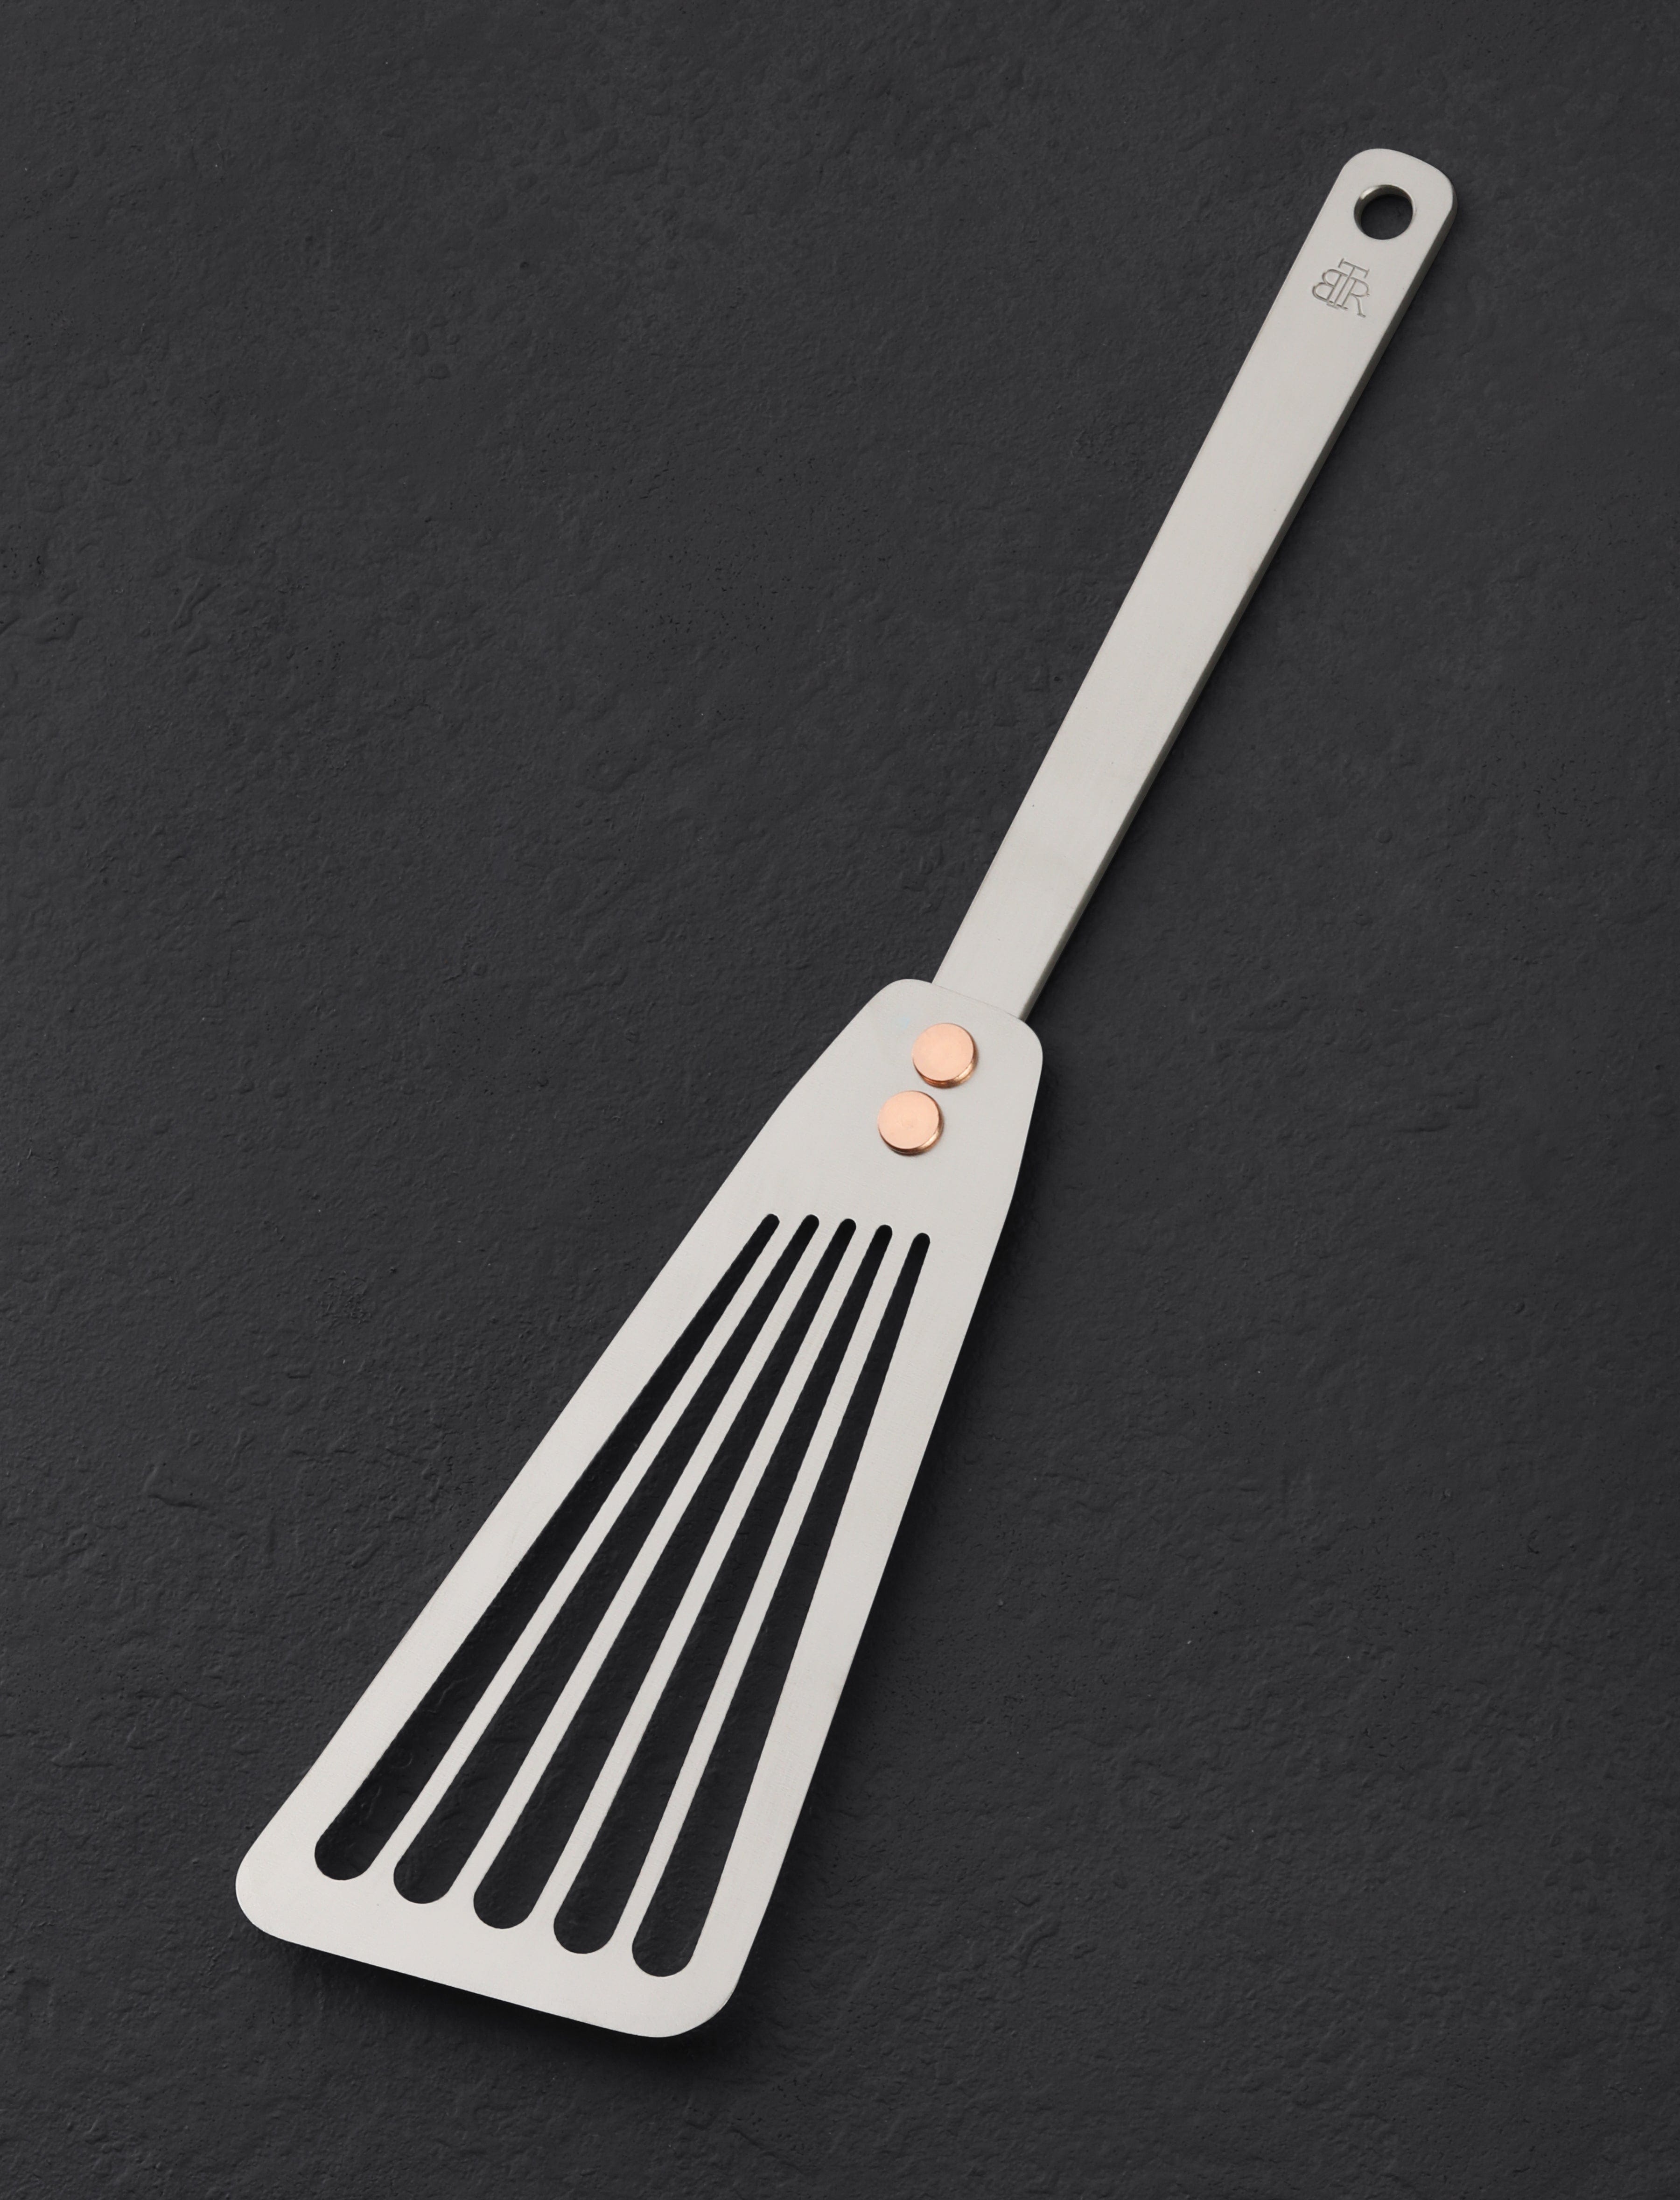 http://eatingtools.com/cdn/shop/files/spatulas-ben-tendick-oregon-tispats-titanium-fish-spatula-43020361007379.jpg?v=1693333809